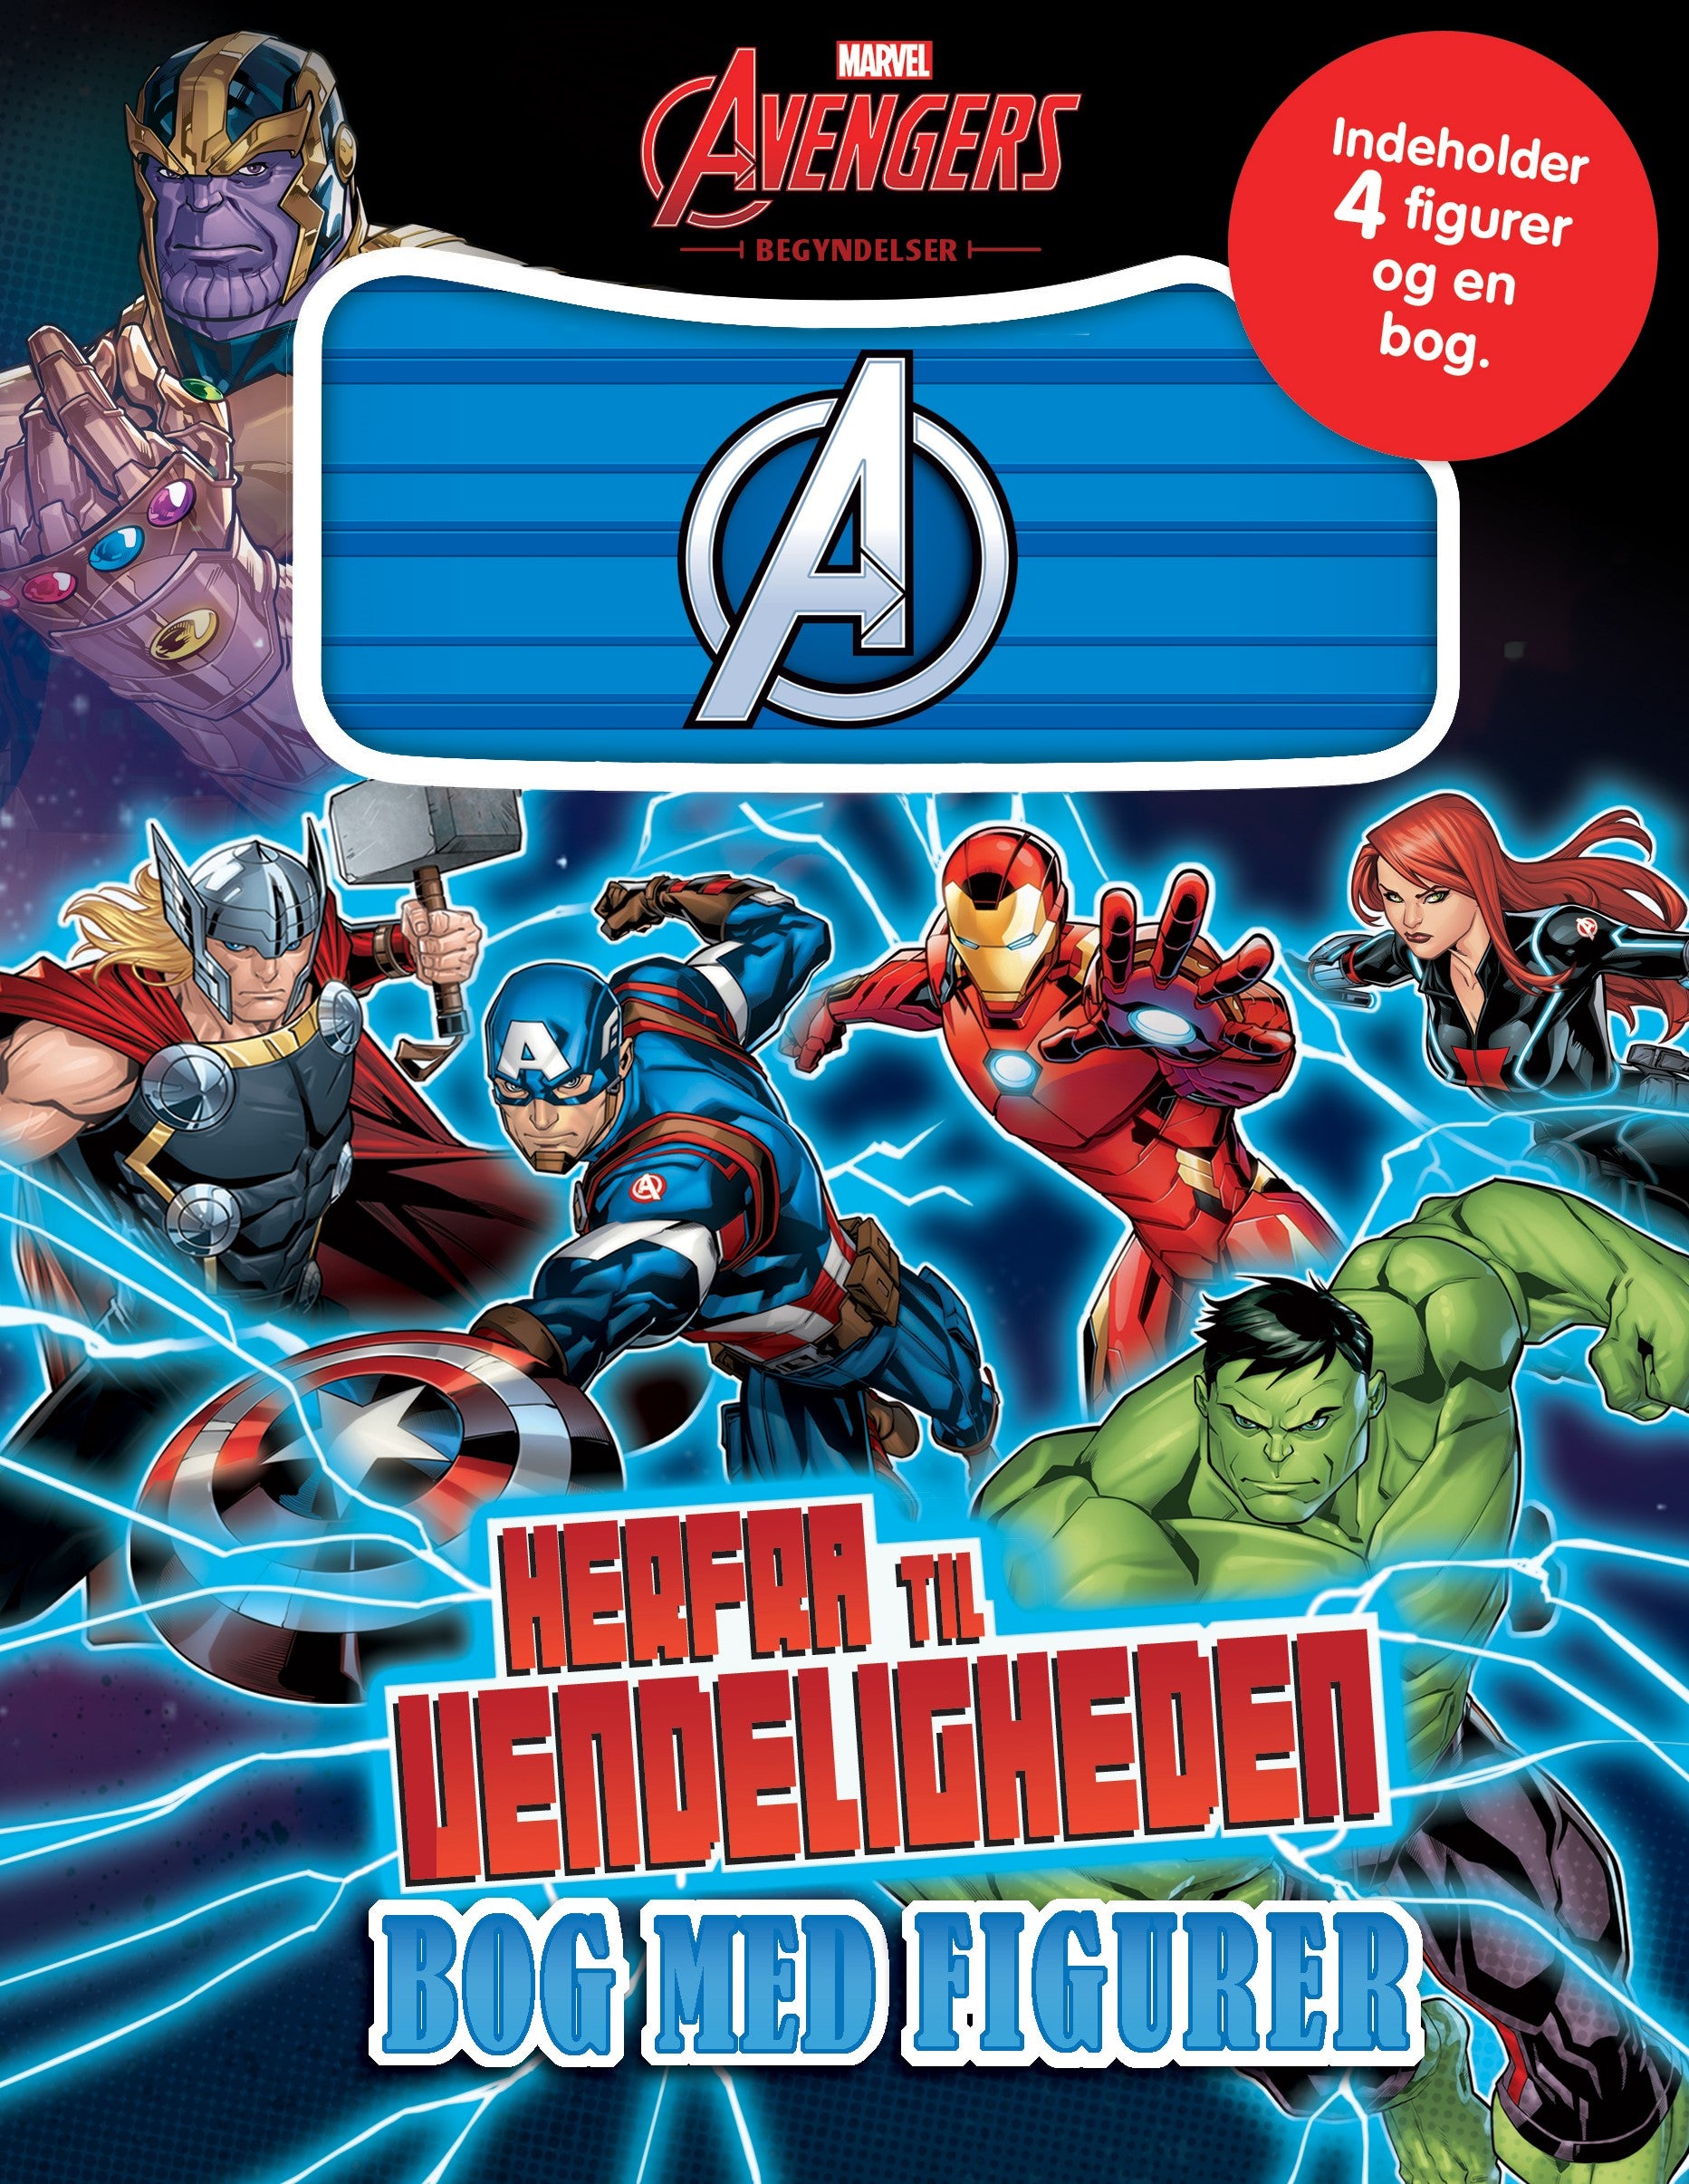 Forside til bogen Marvel Avengers - Bog med figurer